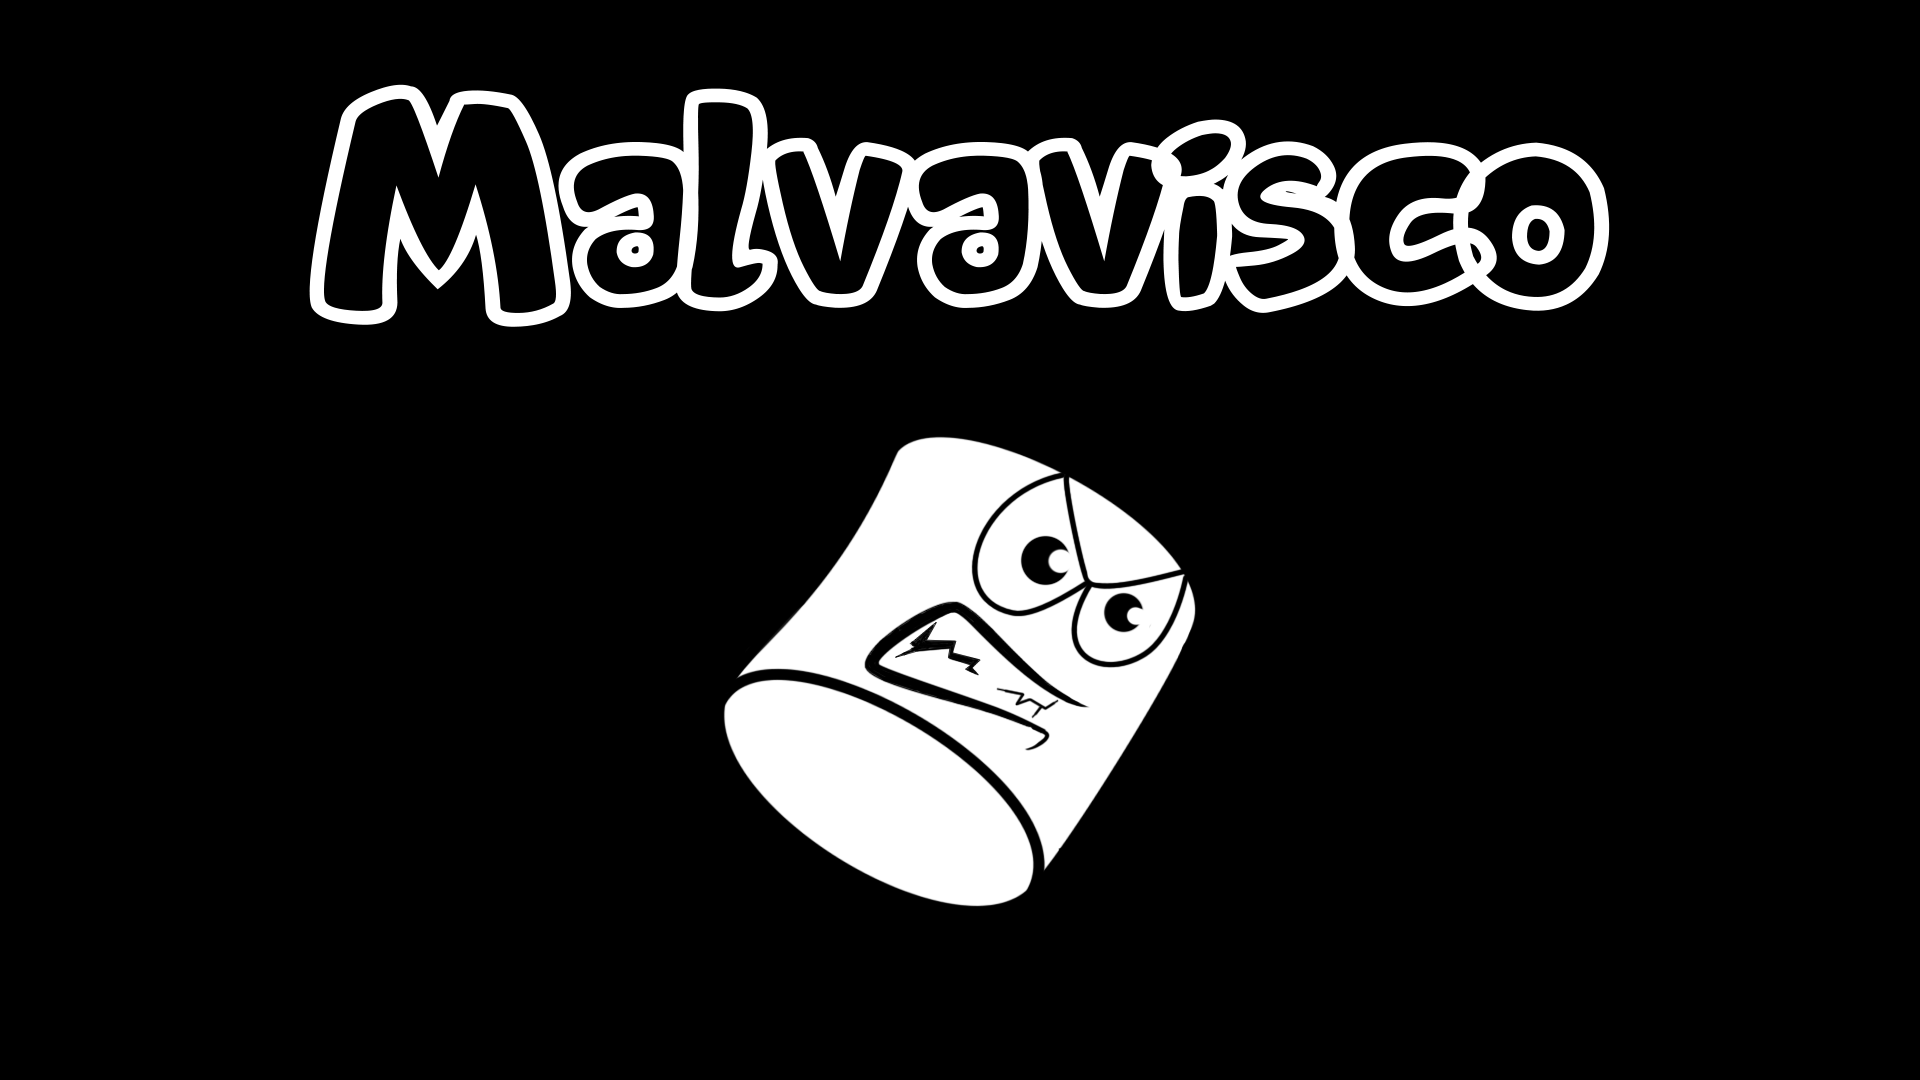 Malvavisco (Demo)